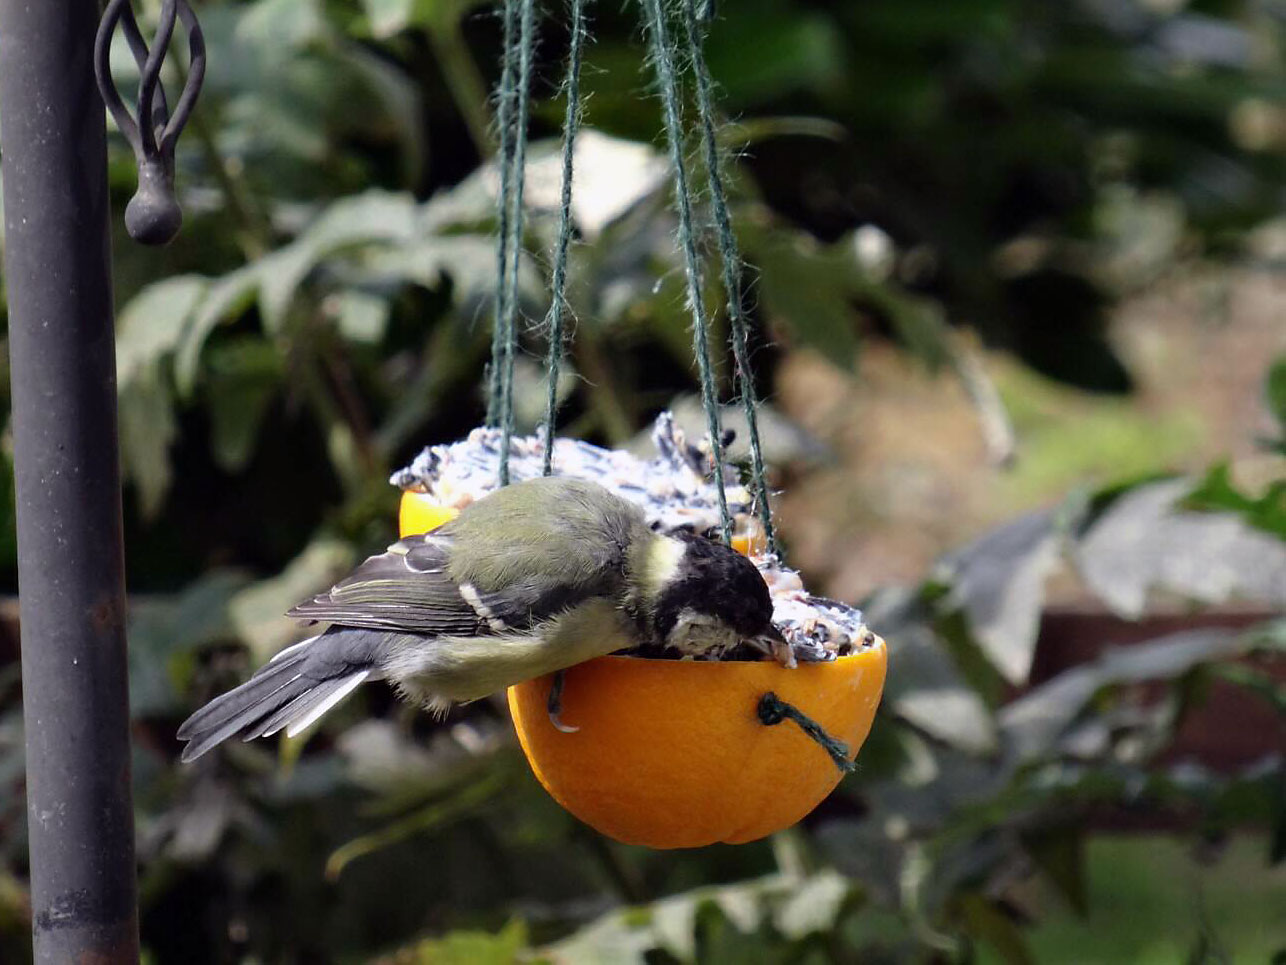 A bird eating bird cake (environmental activity)